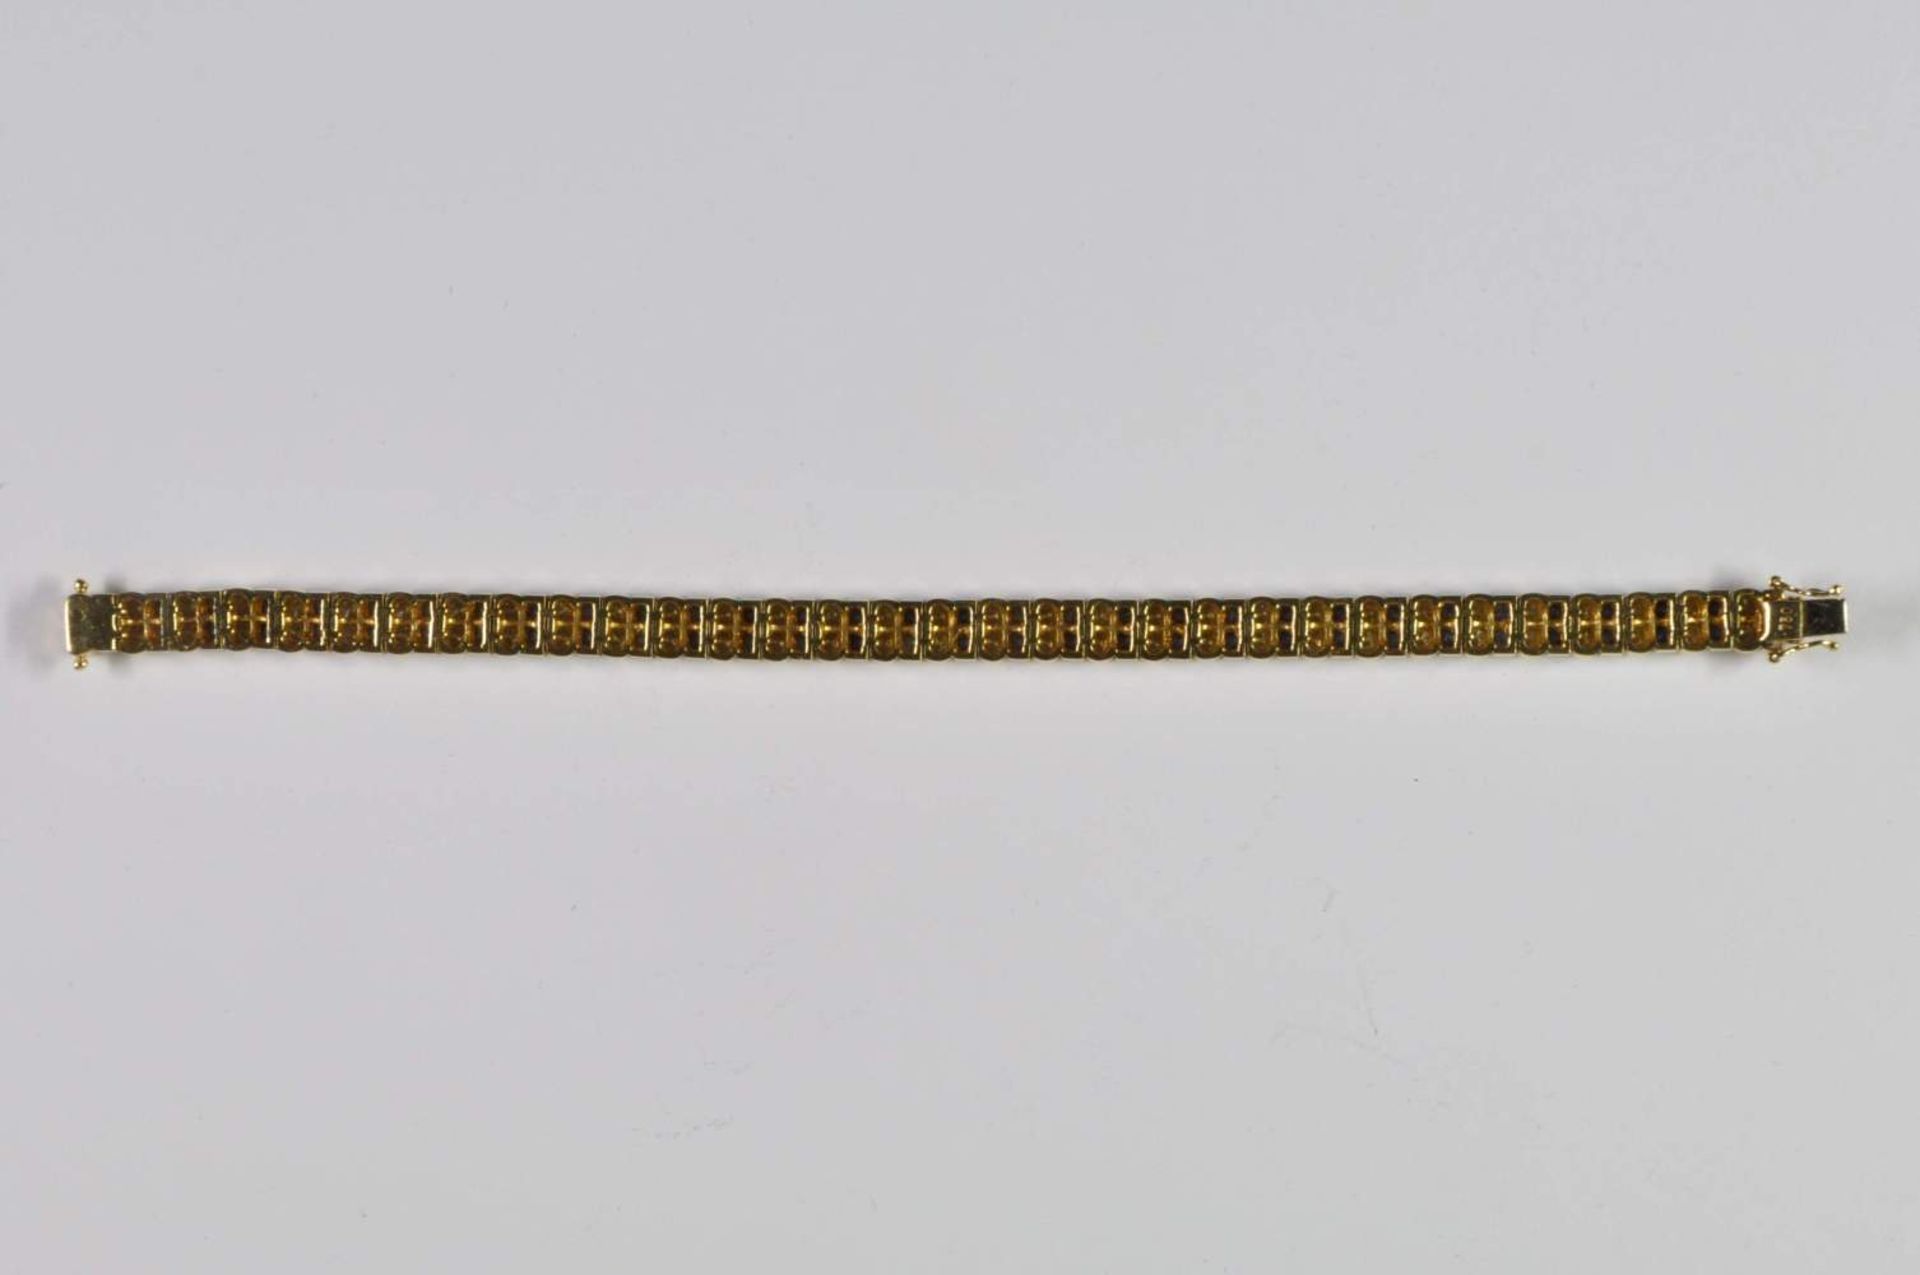 Saphir-Brillant-Armband, 750 Gelbgold, Punze, 66 Brillanten von zus. ca. 3,2ct, 64 Saphiren von zus. - Bild 7 aus 20